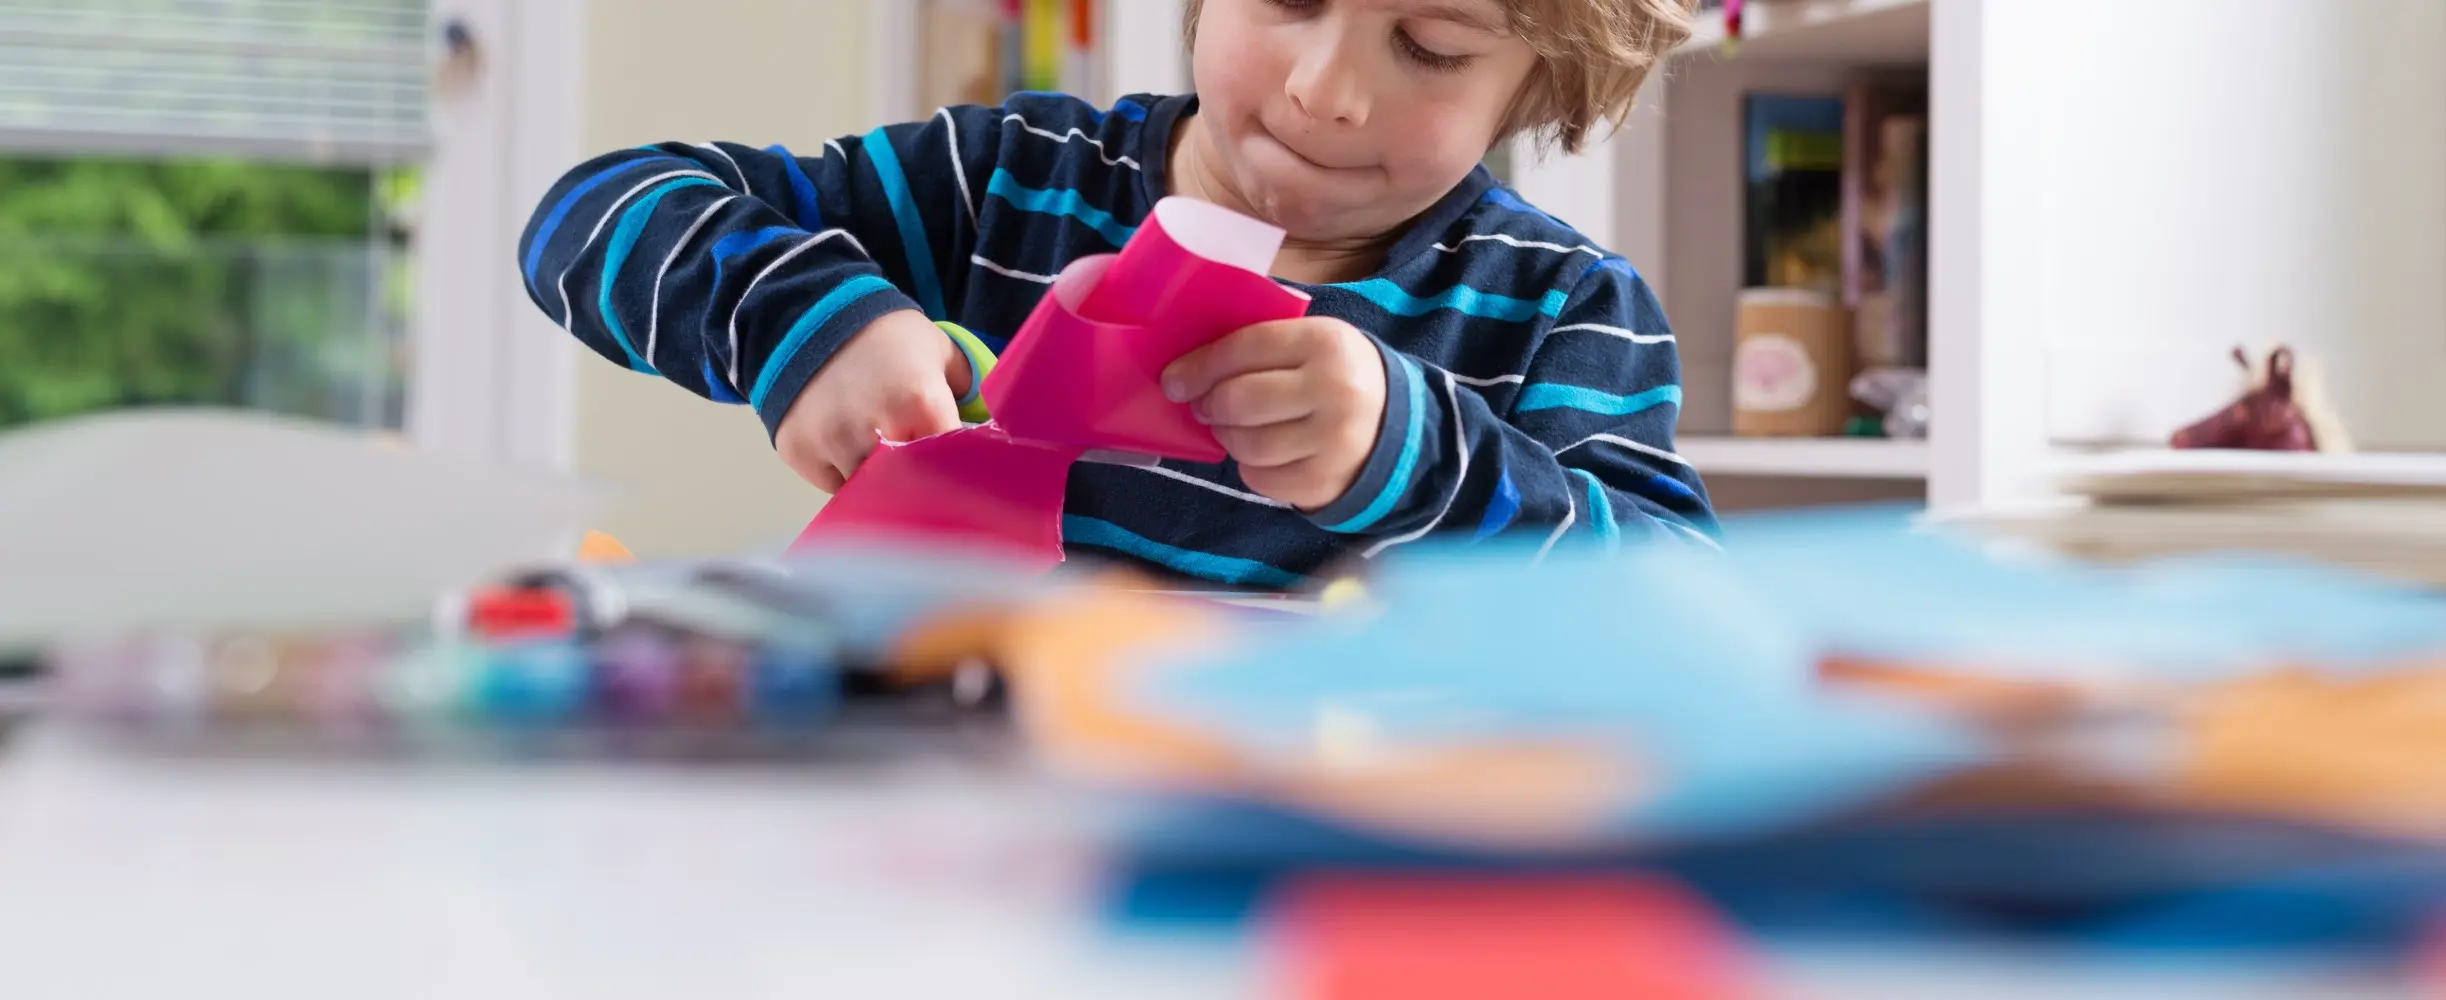 Criança cortando papel de presente